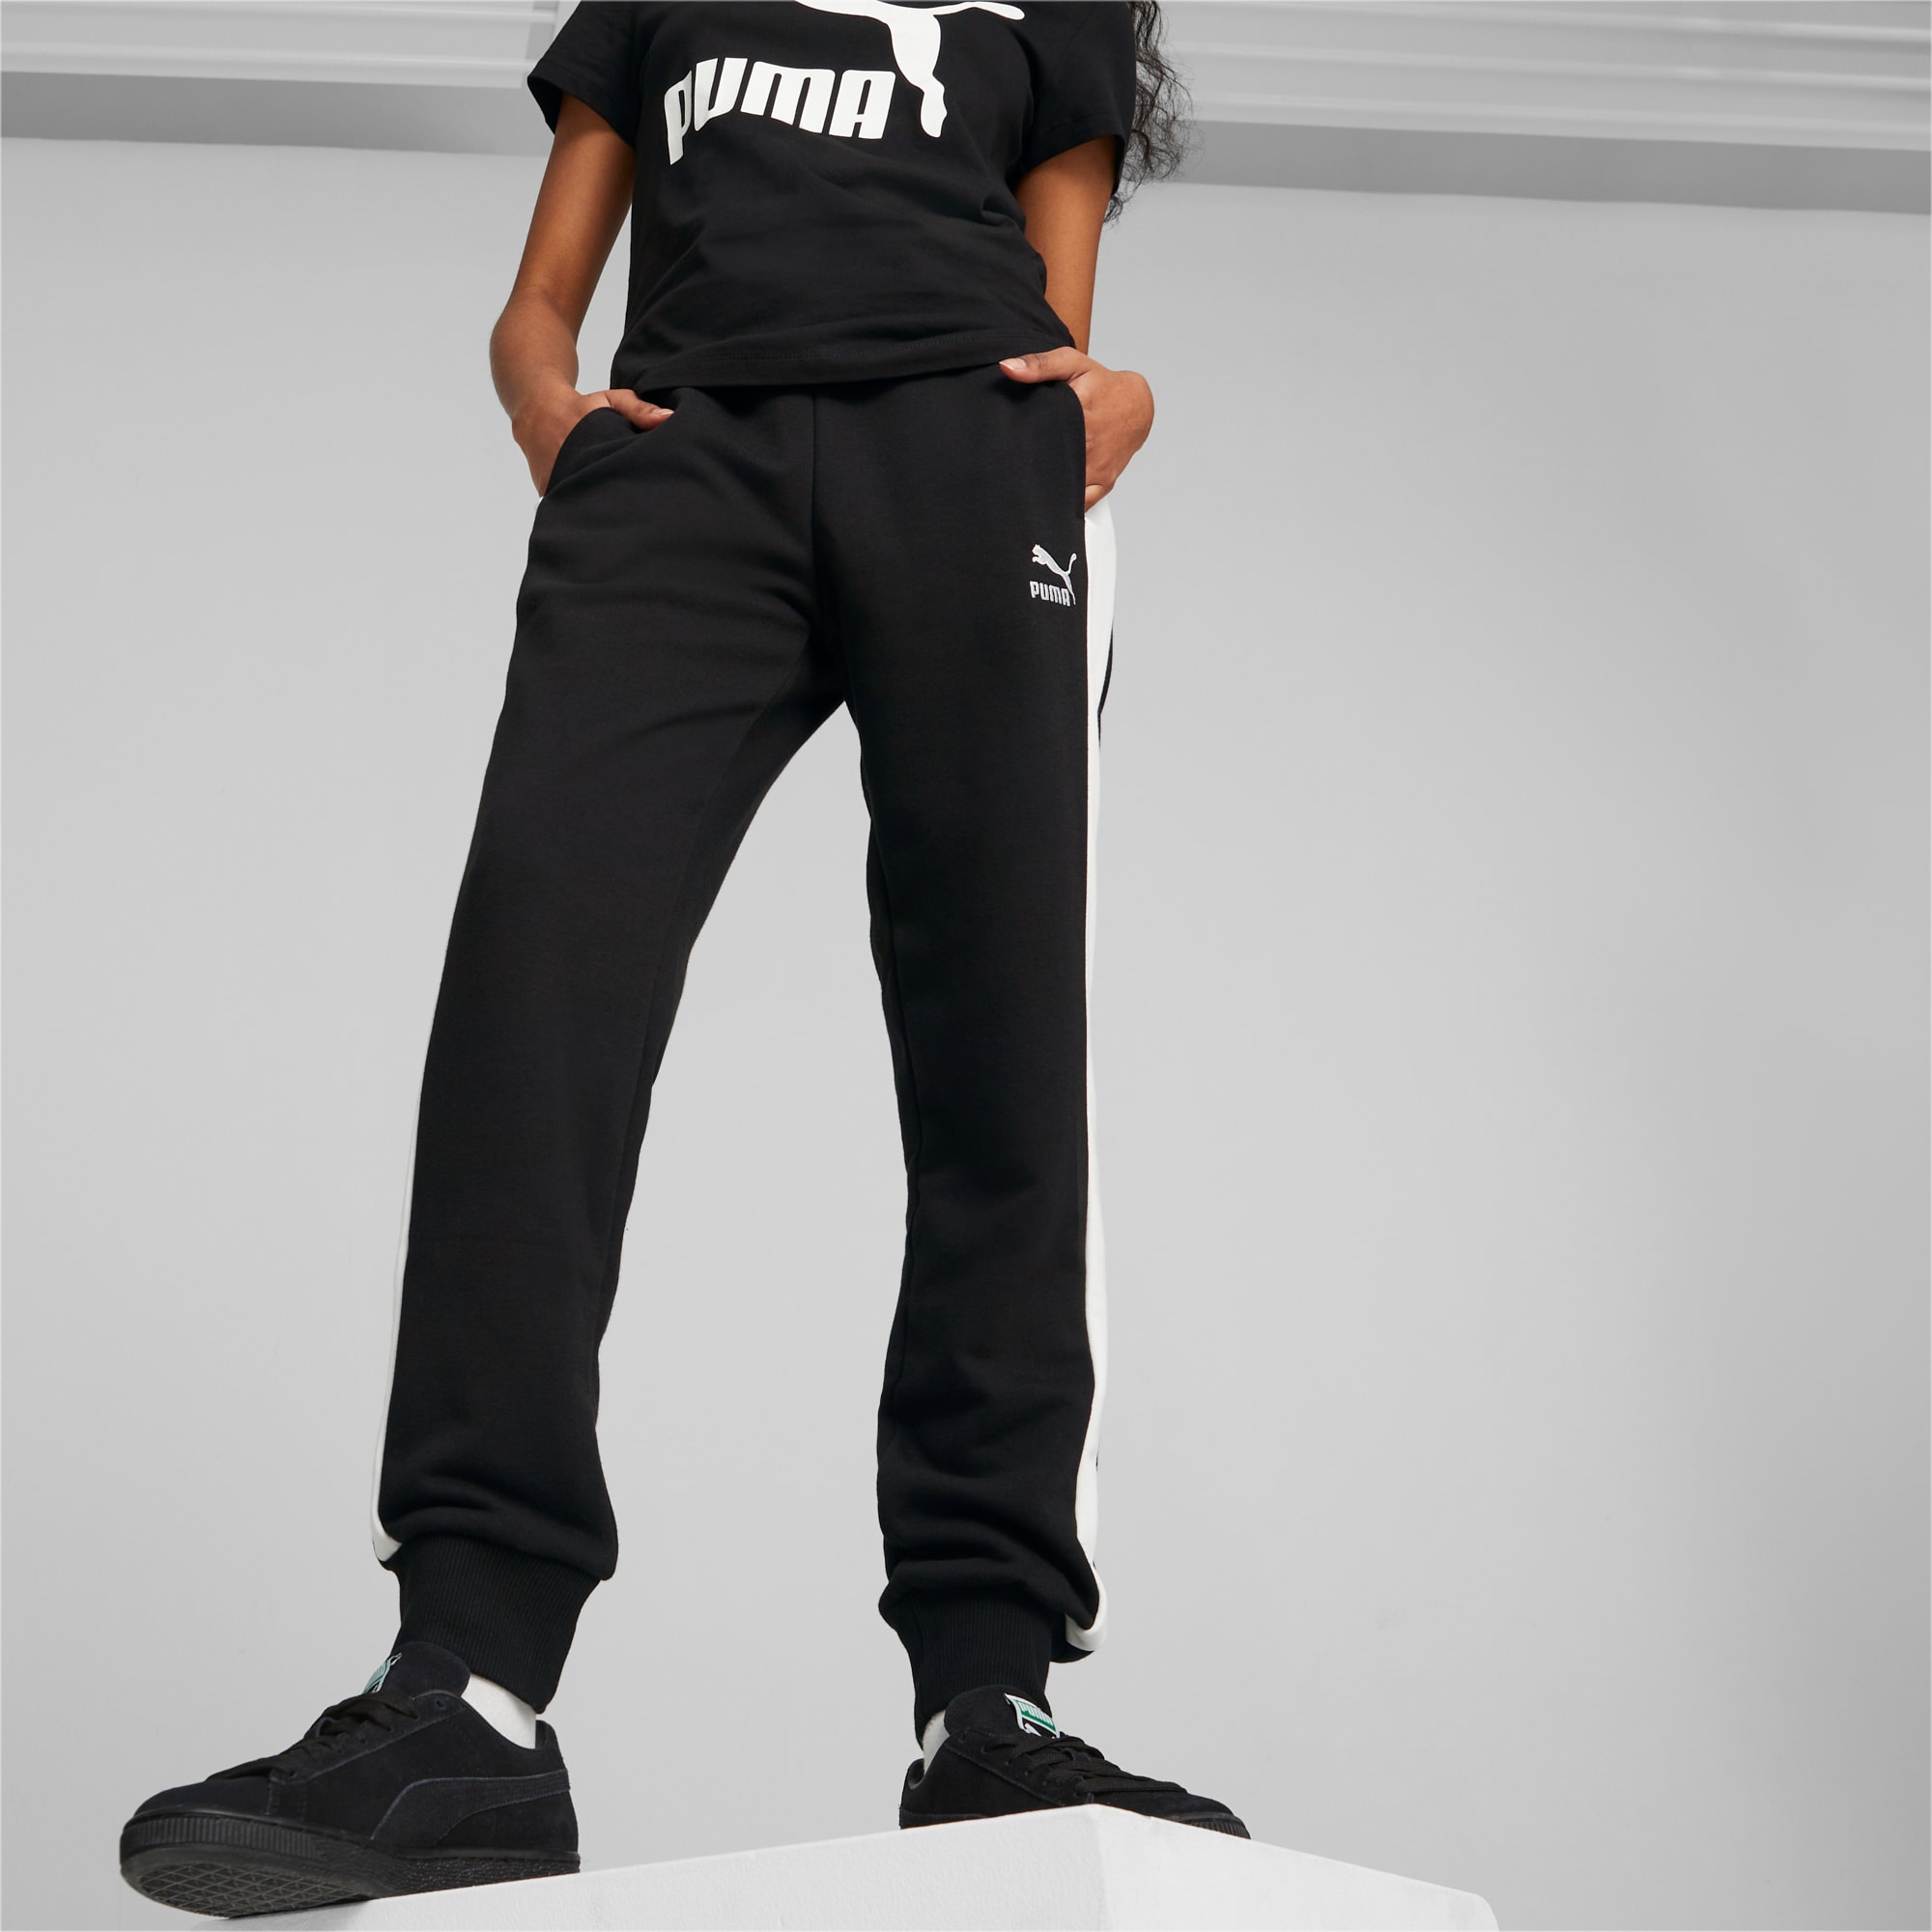 District Concept Store - PUMA T7 Straight Women Pants - Black (533520-01)